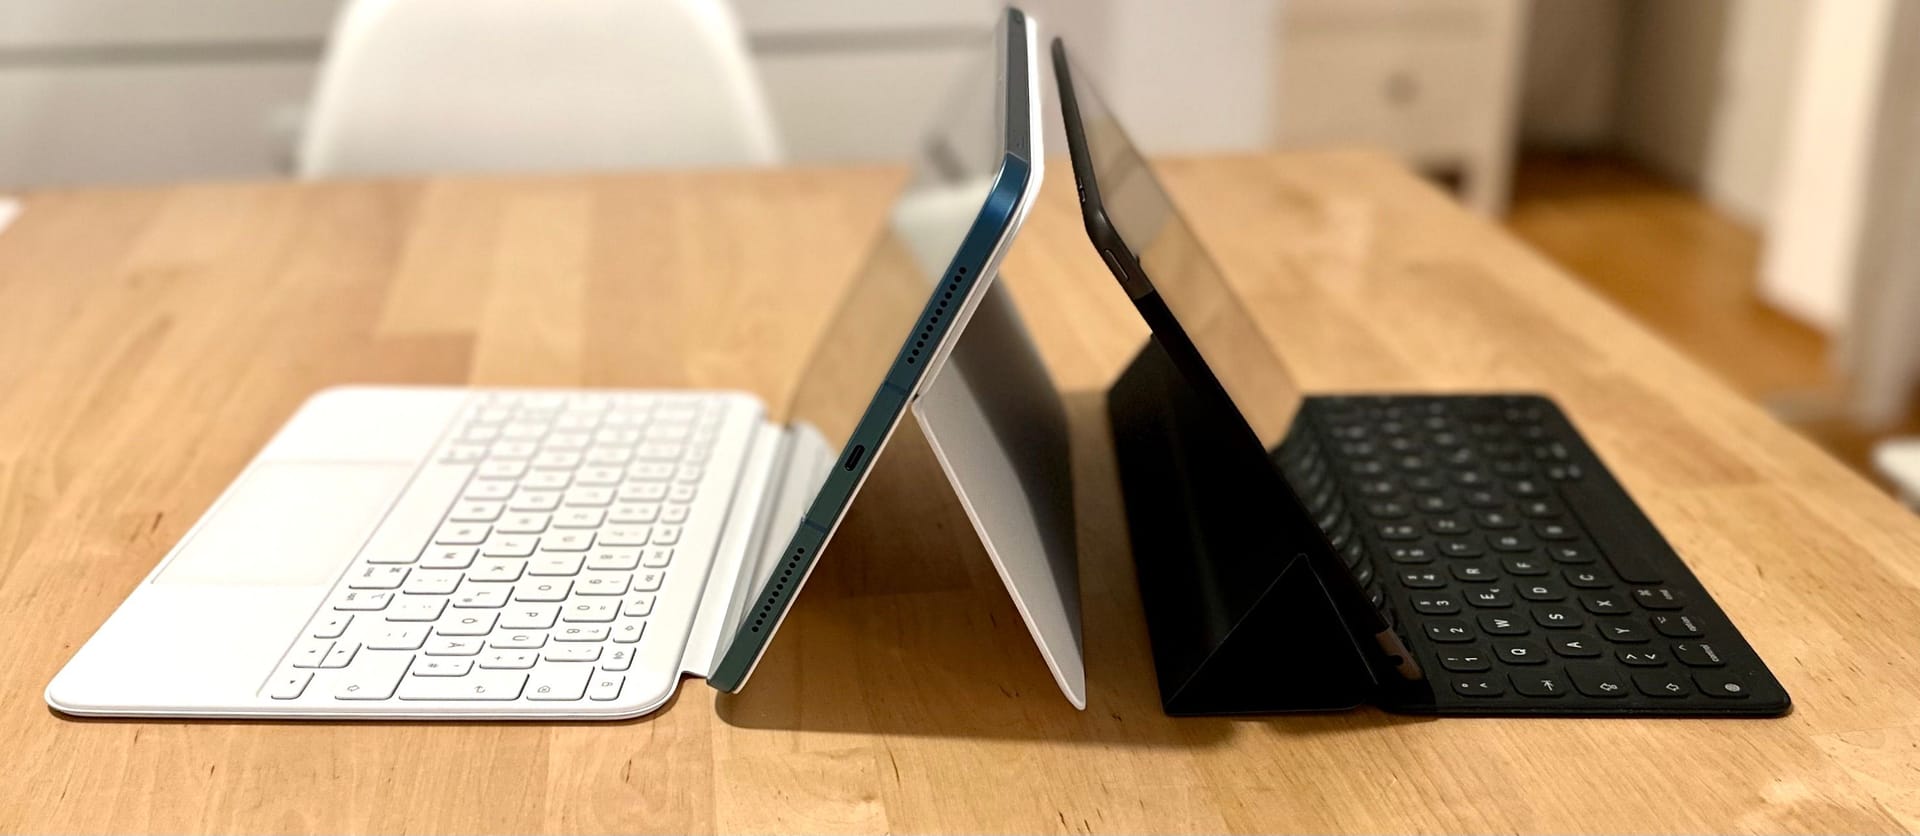 Apple iPad (10. Generation) mit Magic Keyboad Folio links und das iPad (9. Generation) mit dem Smart Keyboard zum Vergleich